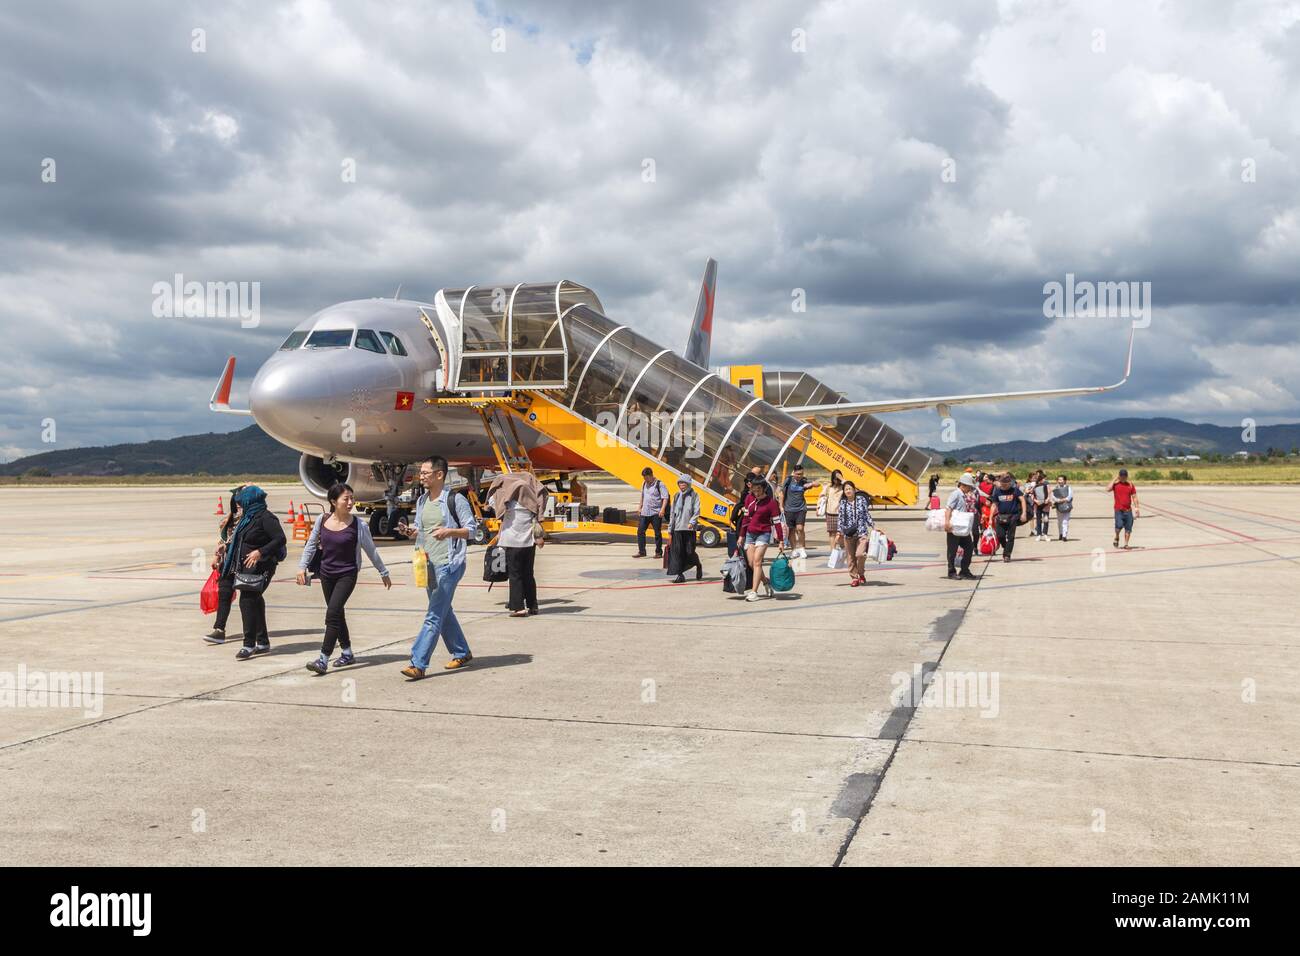 Dalat, Vietnam - 23 de enero de 2018: La gente deja un avión que acaba de aterrizar Foto de stock